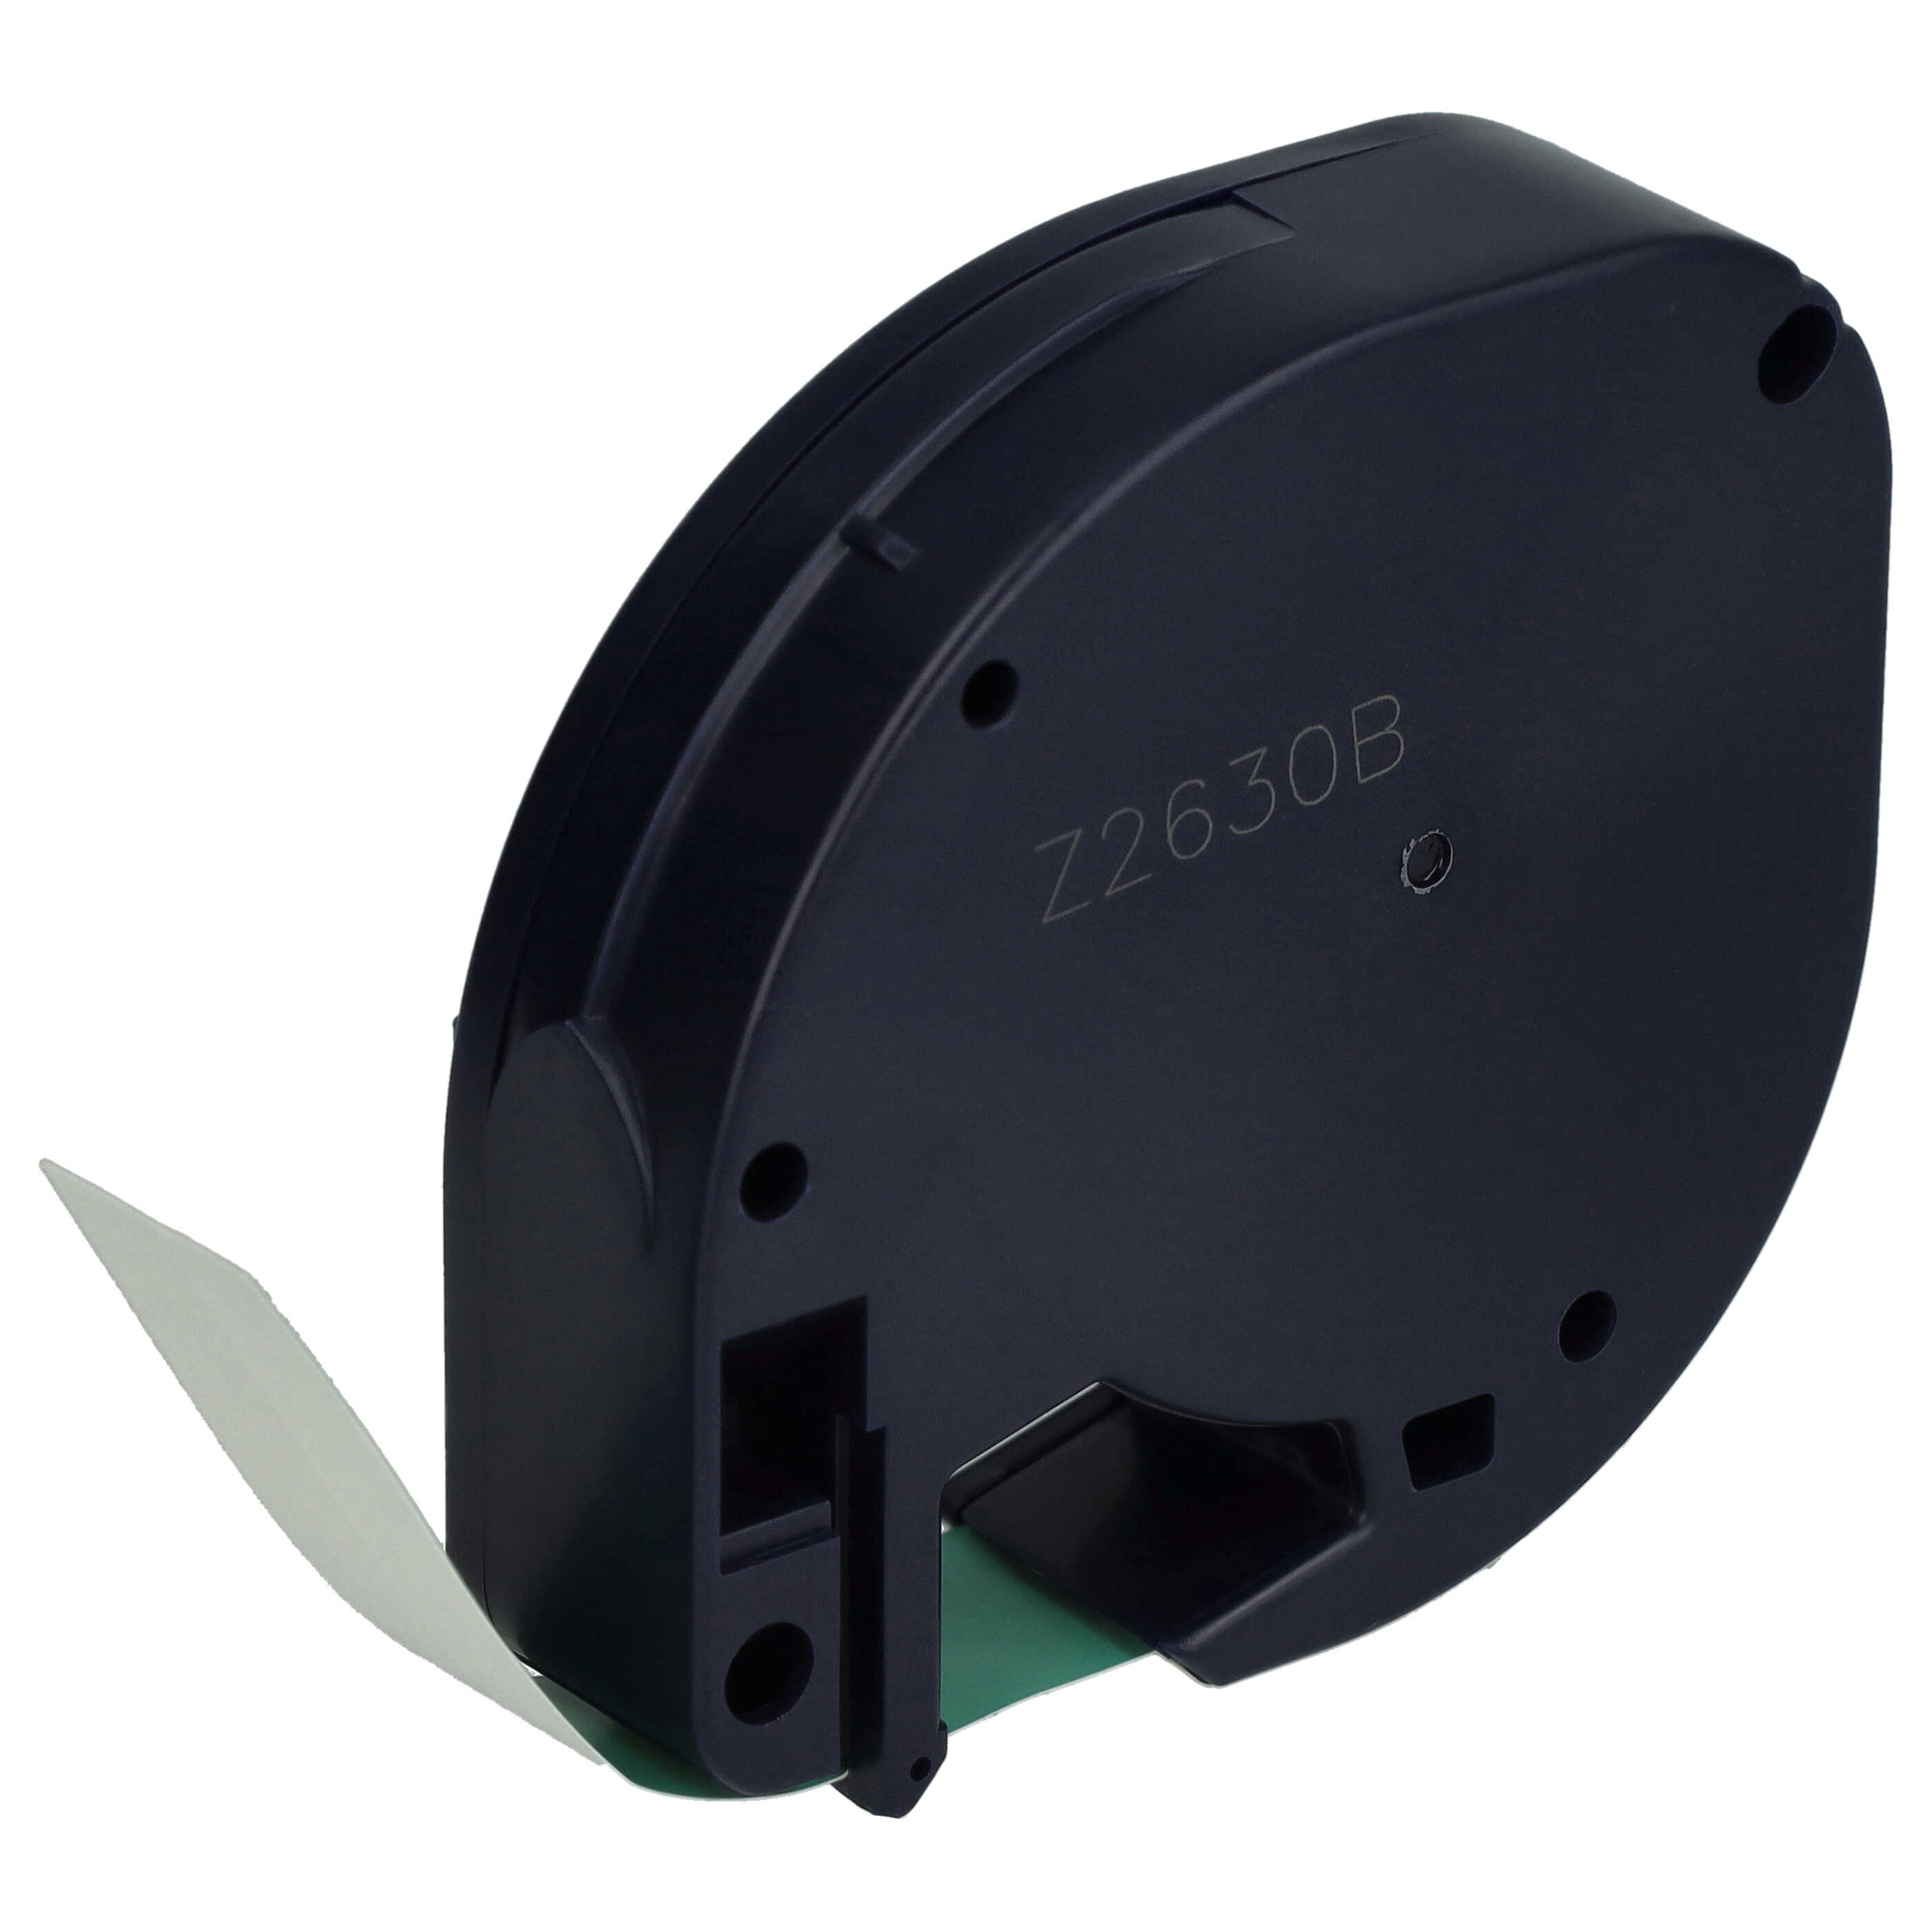 Cassetta nastro plastica sostituisce Dymo 91224, S0721640 per etichettatrice Dymo 12mm nero su verde, plastica